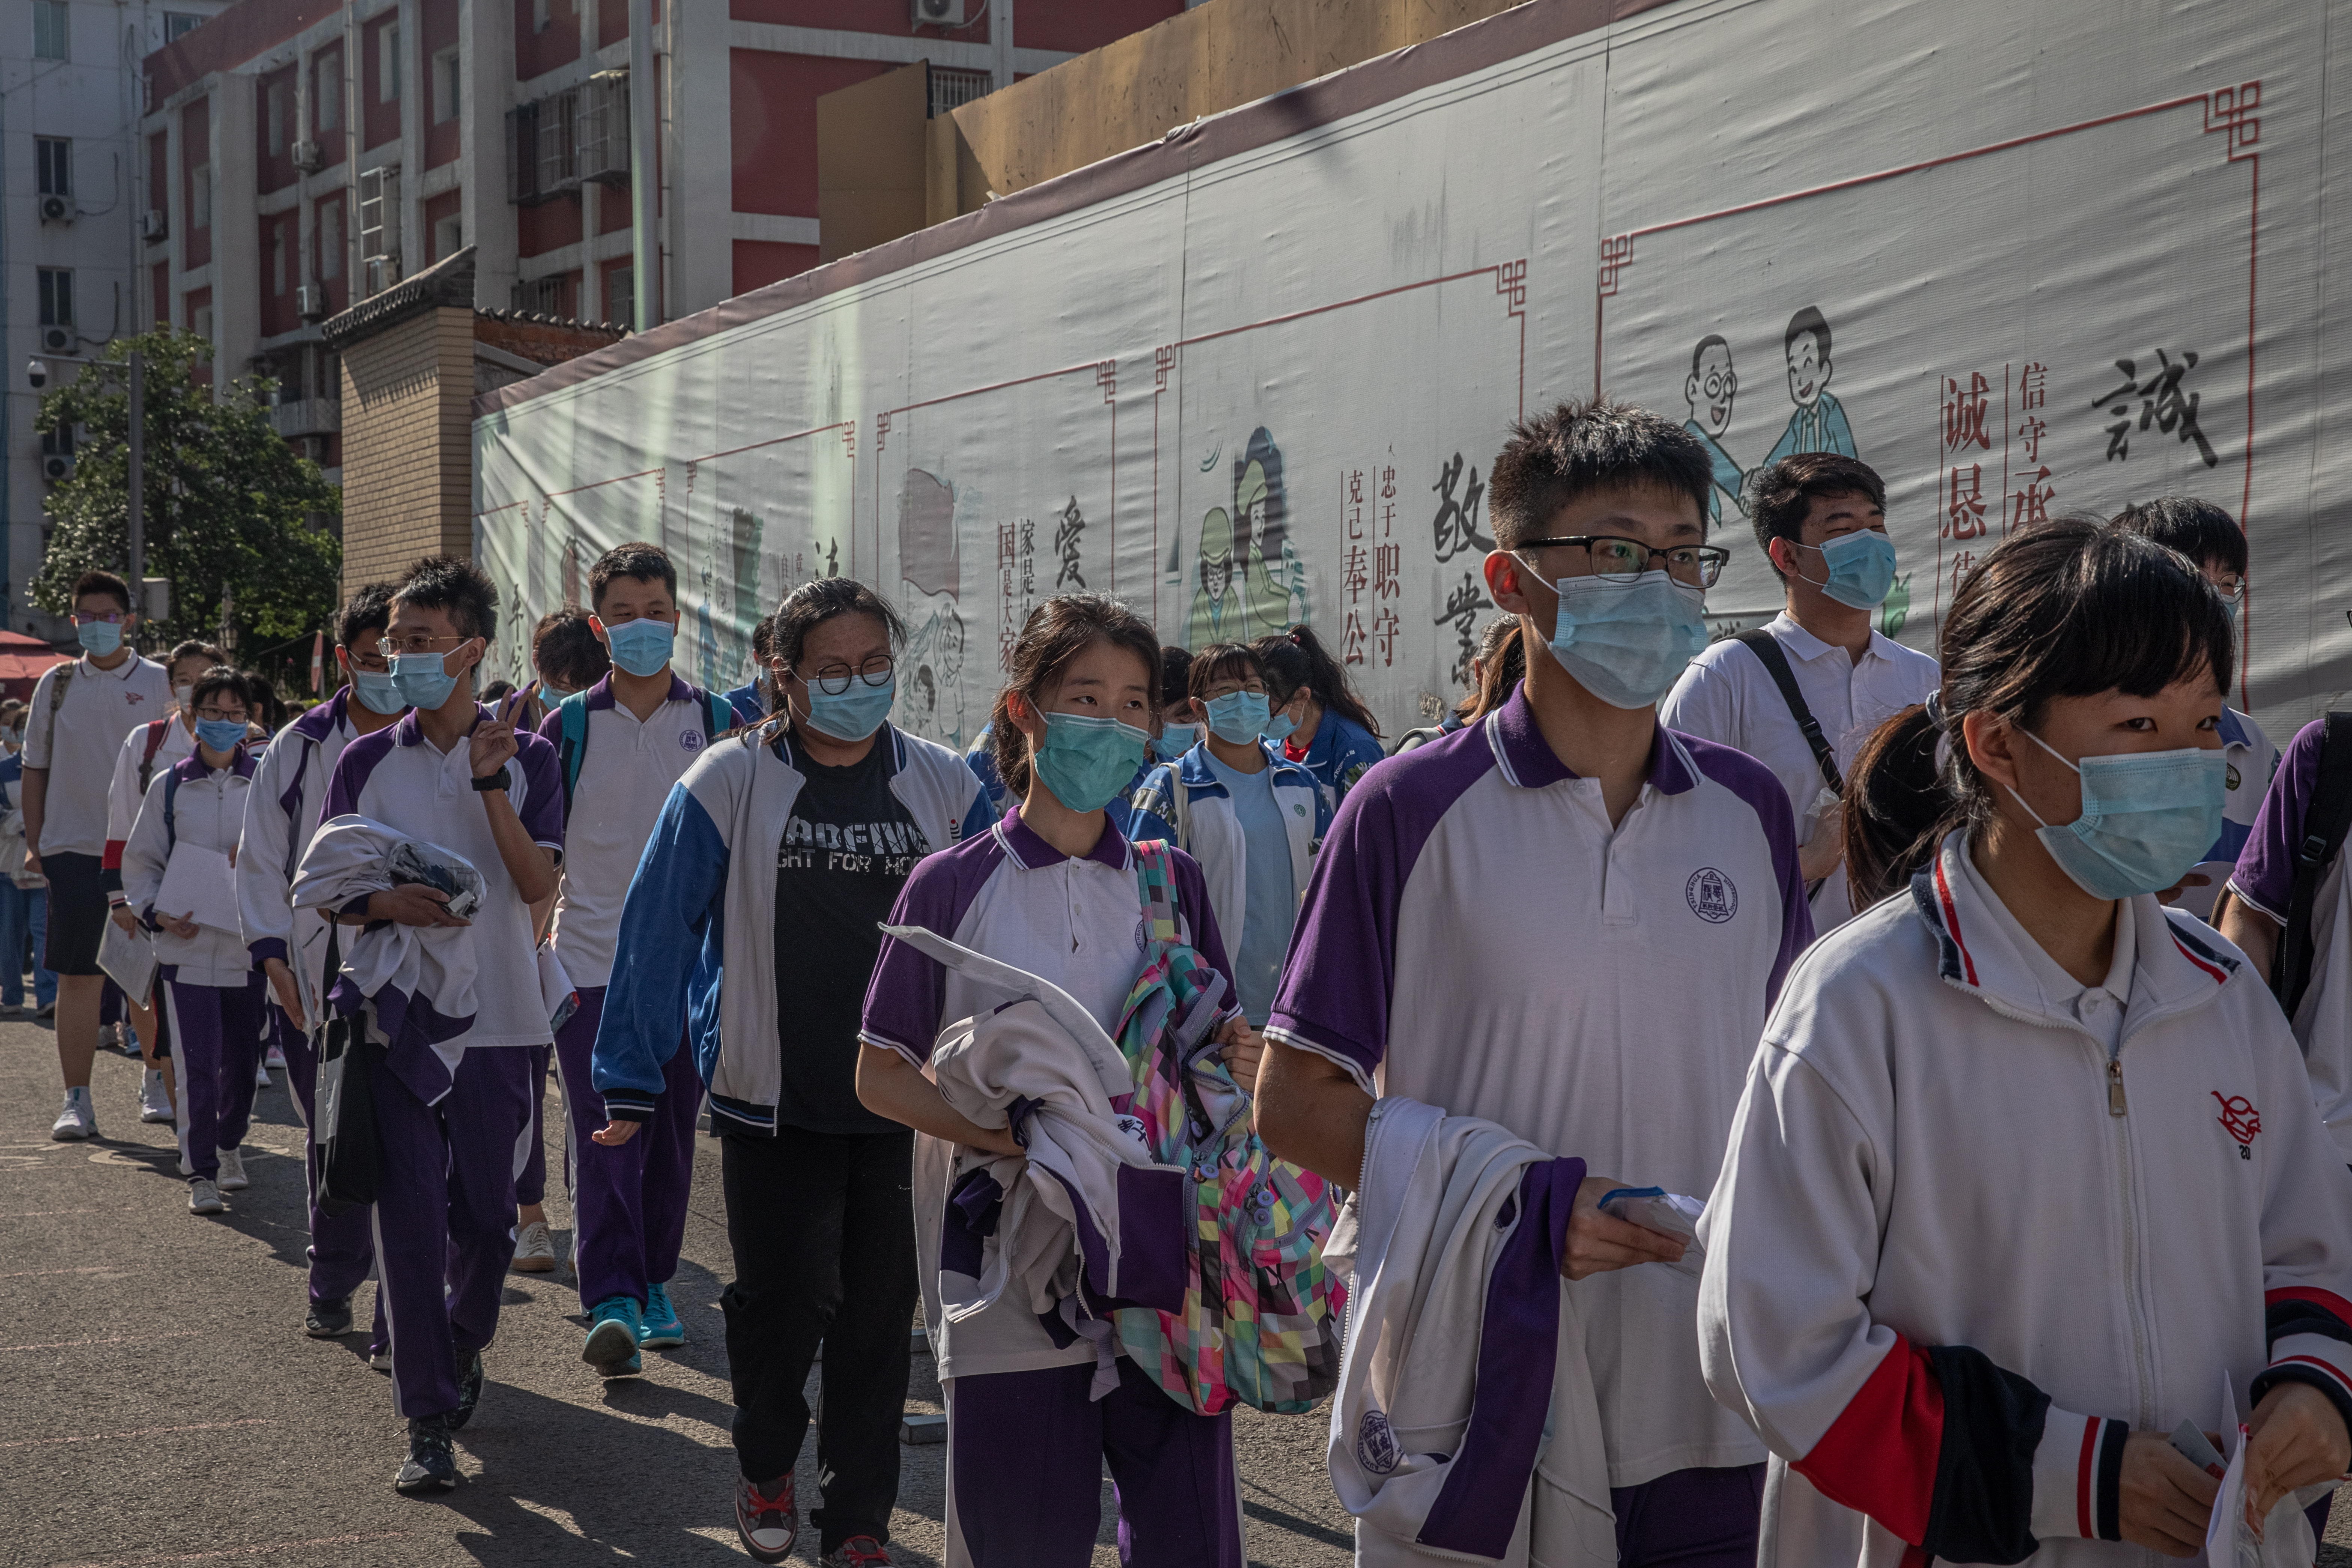 Los estudiantes con mascarillas esperan para entrar en una escuela para asistir al primer día de los exámenes anuales de ingreso a la universidad nacional de China en Pekín. EFE/EPA/ROMAN PILIPEY
